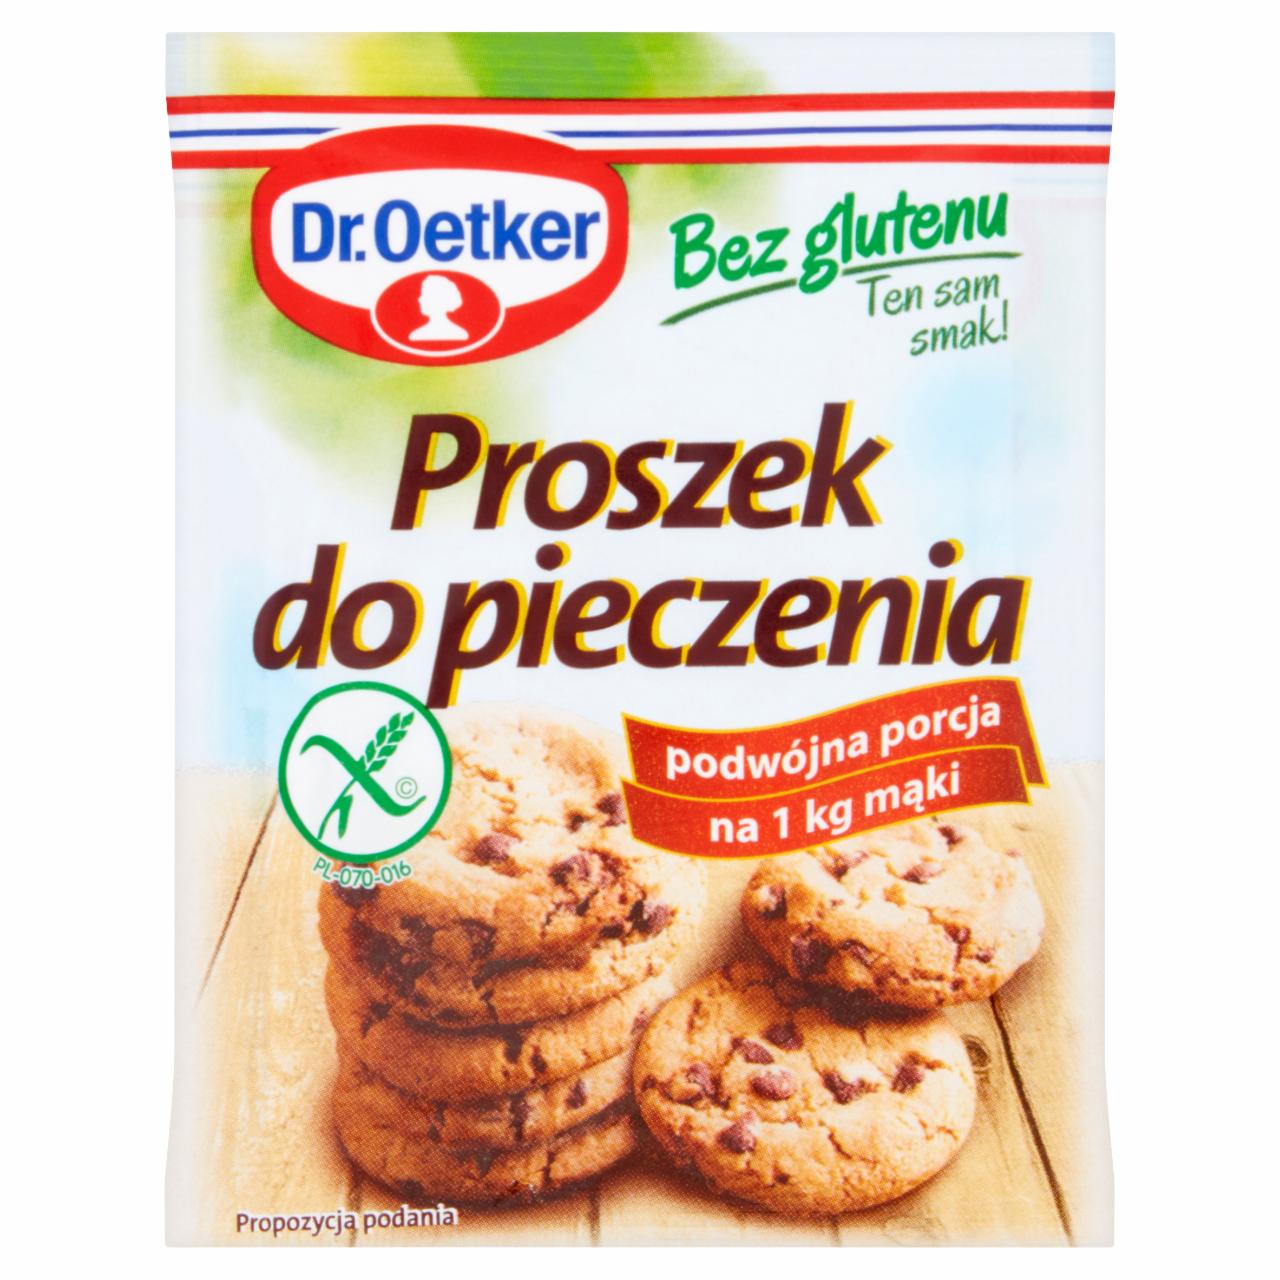 Zdjęcia - Dr. Oetker Proszek do pieczenia bez glutenu 30 g